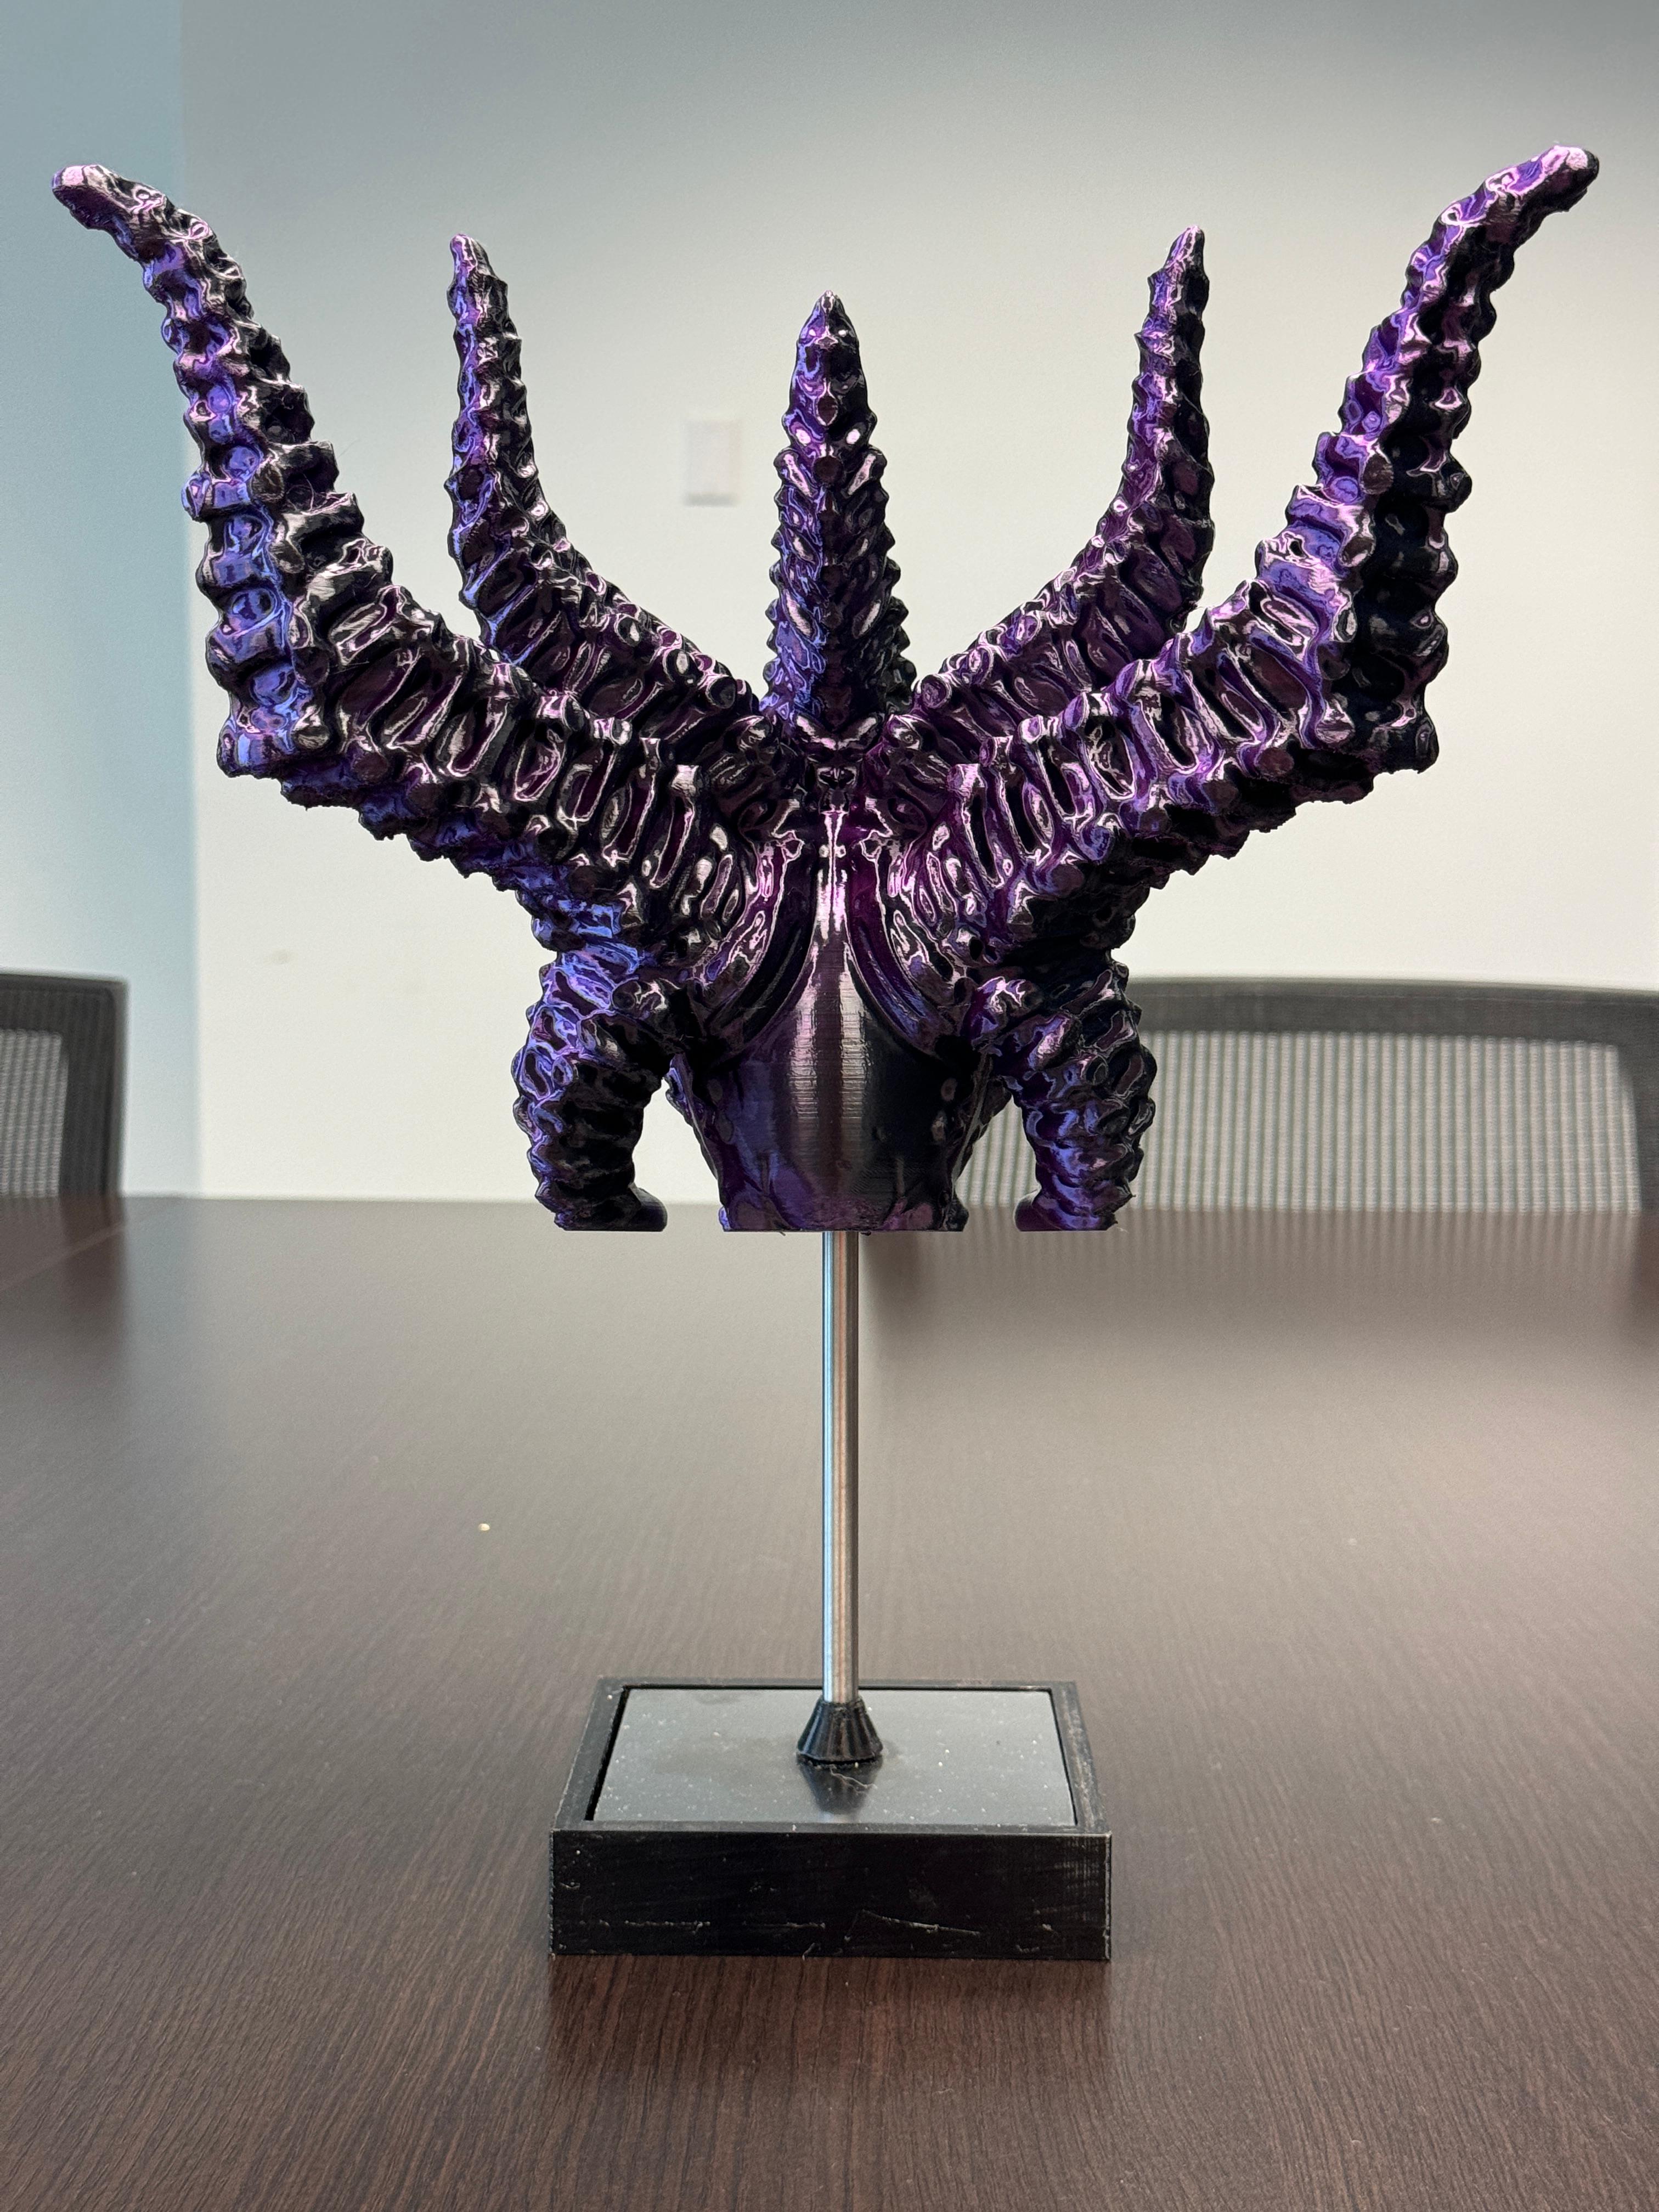 Lilith's Skull - Diablo V - Fan Art 3d model